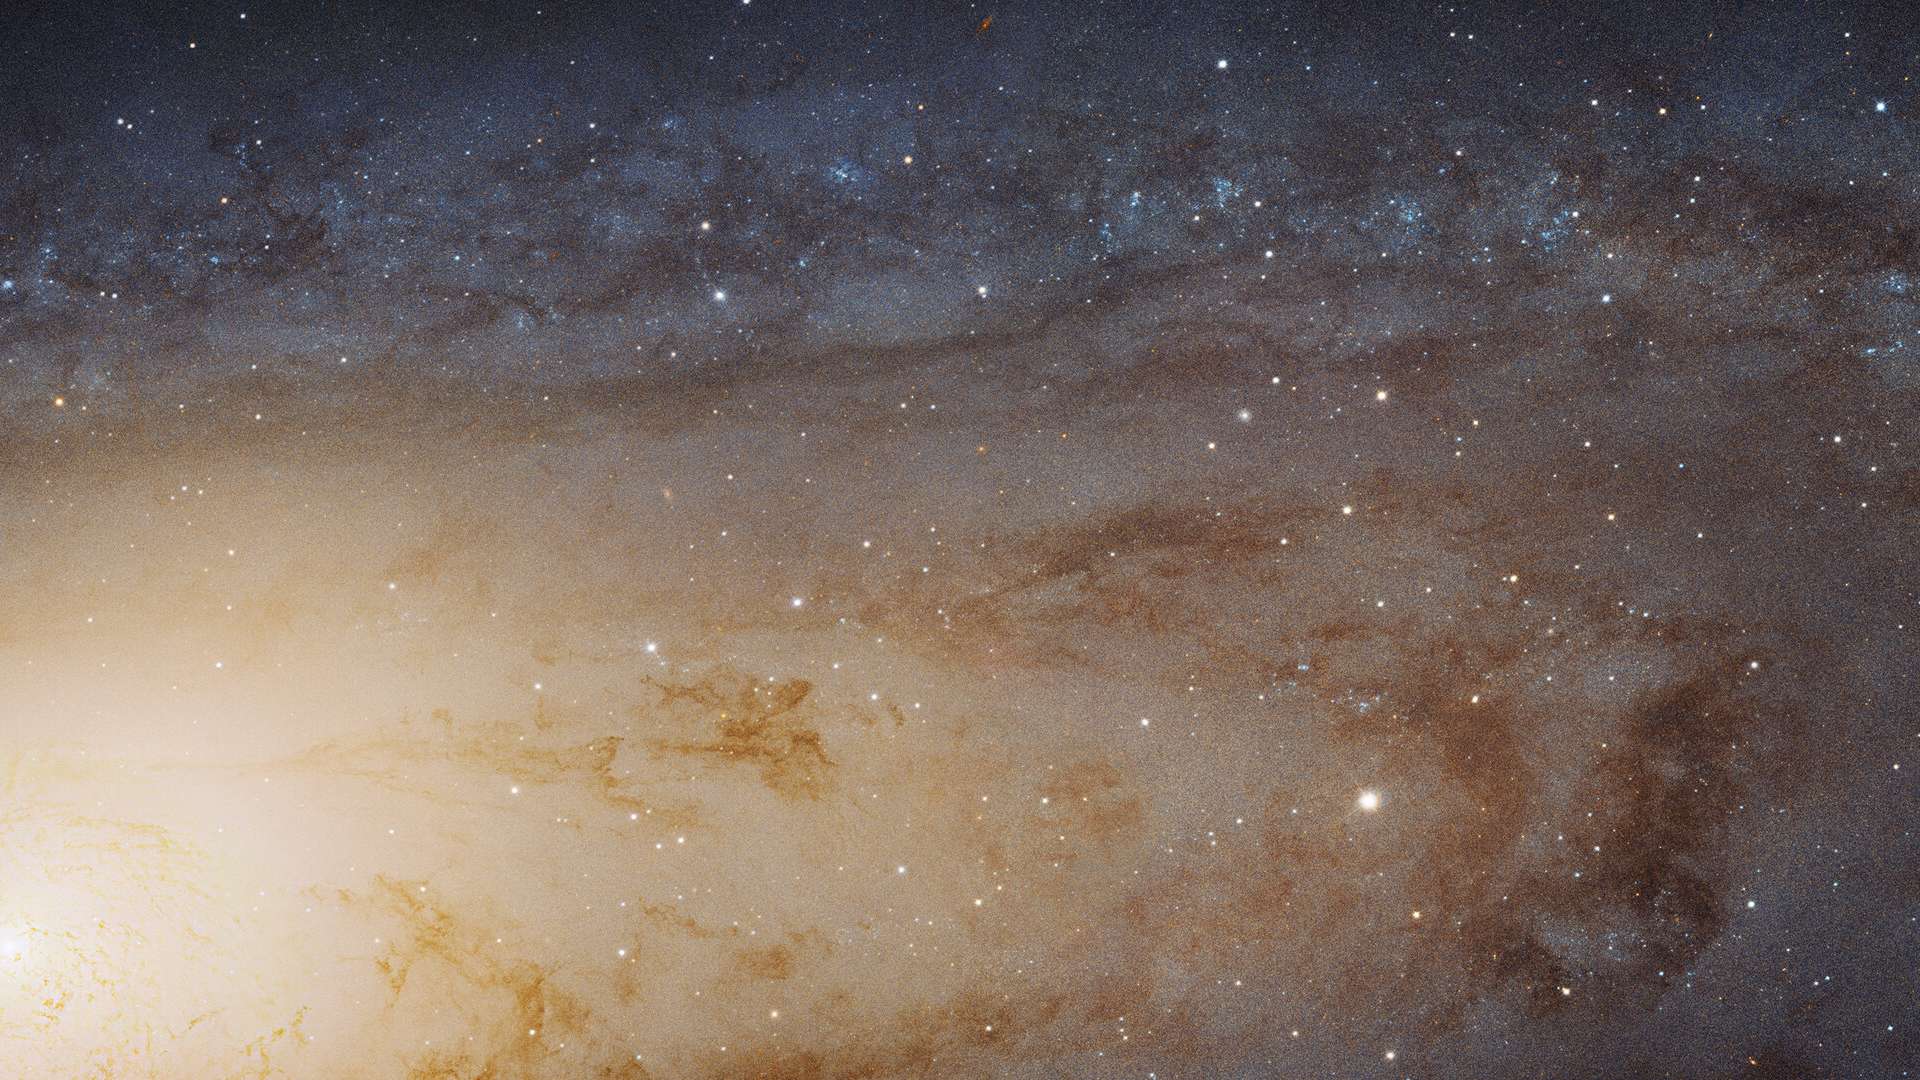 Esta imagem, capturada com o Telescópio Espacial Hubble, da Nasa/ESA, é a maior e mais nítida imagem já obtida da galáxia de Andrômeda, também conhecida como M31. Ela mostra mais de 100 milhões de estrelas e milhares de aglomerados estelares embutidos em uma seção do disco da galáxia, que se estende por mais de 40 mil anos-luz. Localizada na Constelação de Andrômeda, M31 está a cerca de 2,54 milhões de anos-luz da Terra